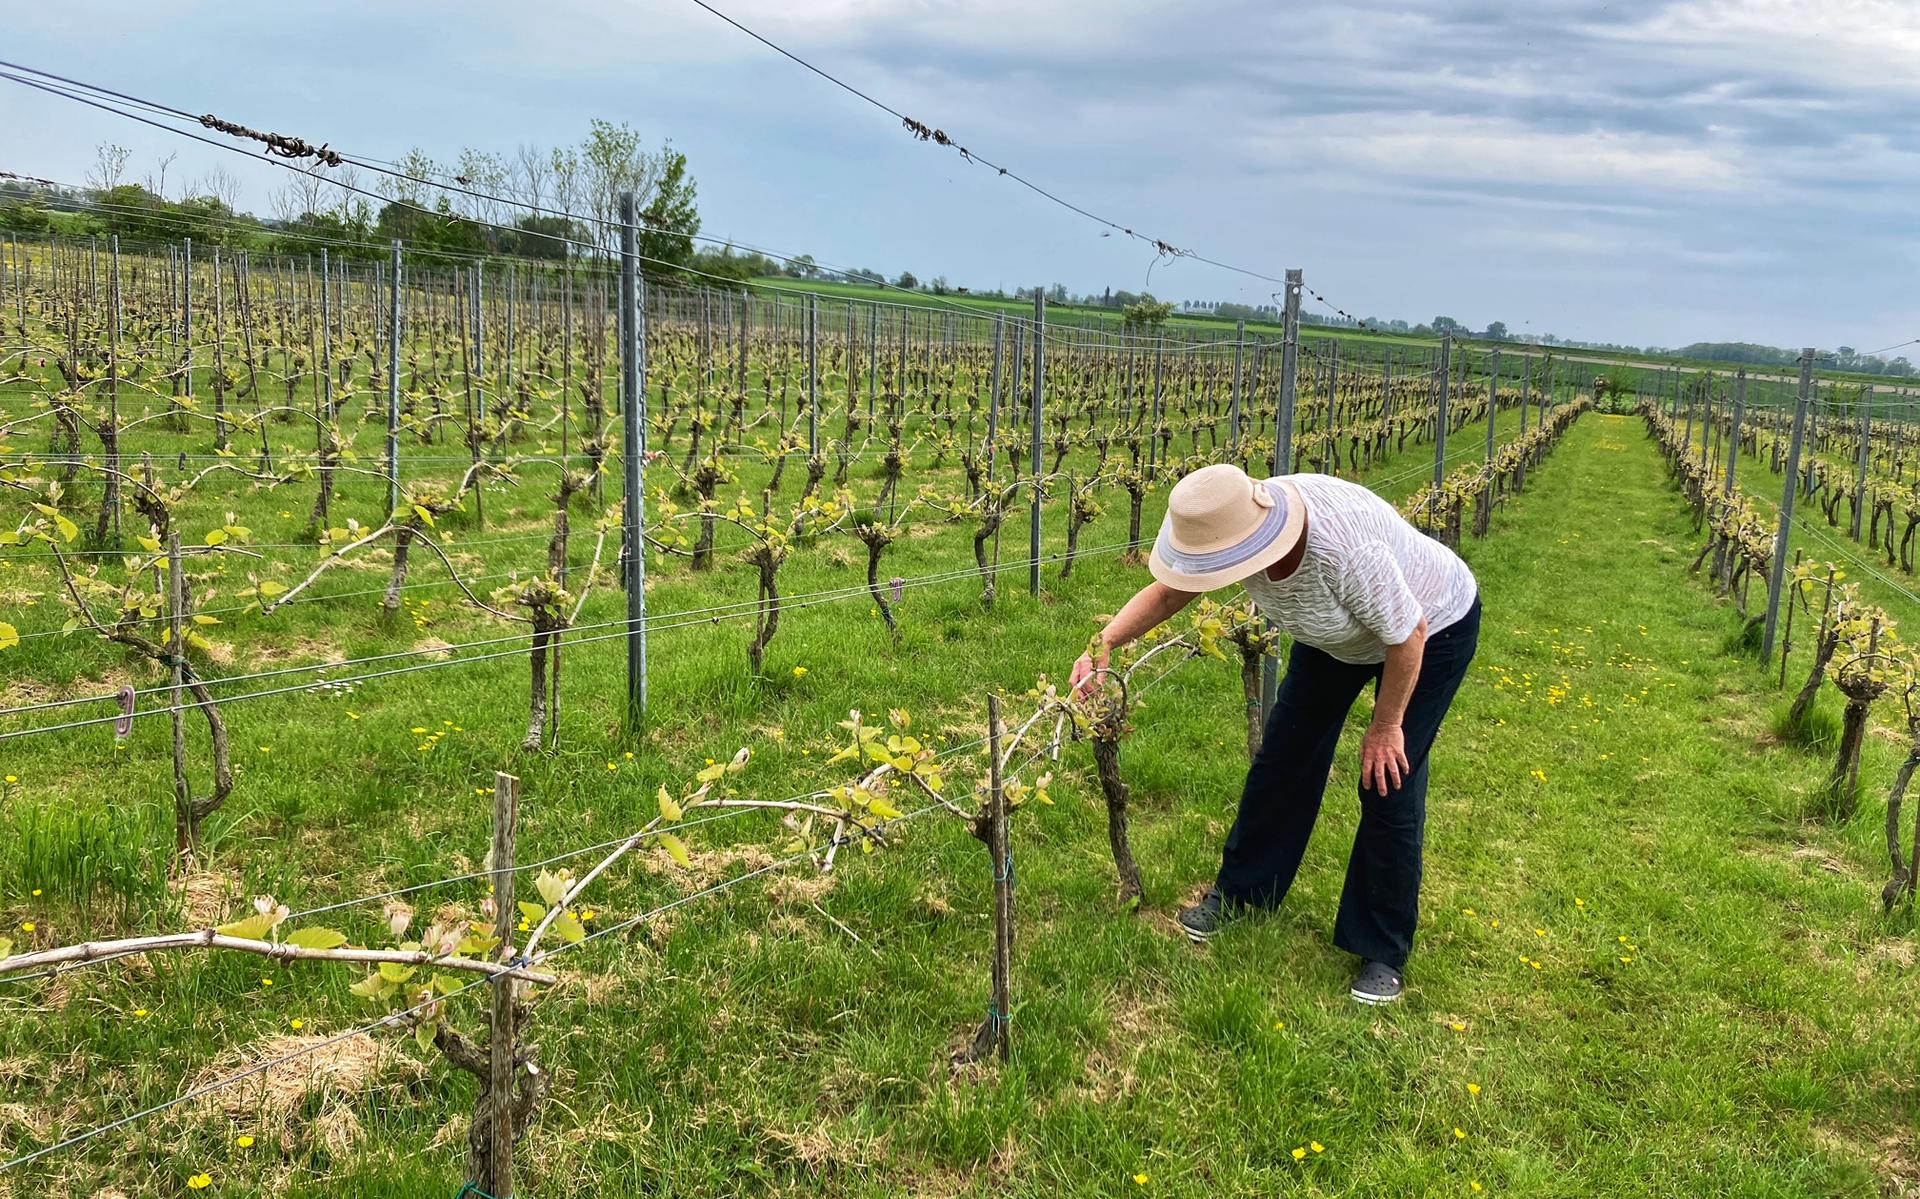 Wie aan wijngaarden denkt, fantaseert waarschijnlijk over glooiende berghellingen in Frankrijk, Italië en Spanje. In het noorden van Nederland zijn ook een paar wijngaarden, zoals deze bij Mensingeweer. Wijnboerin Elma Middel verbouwt druiven op haar Wijngaard Hof van 't Hogeland.